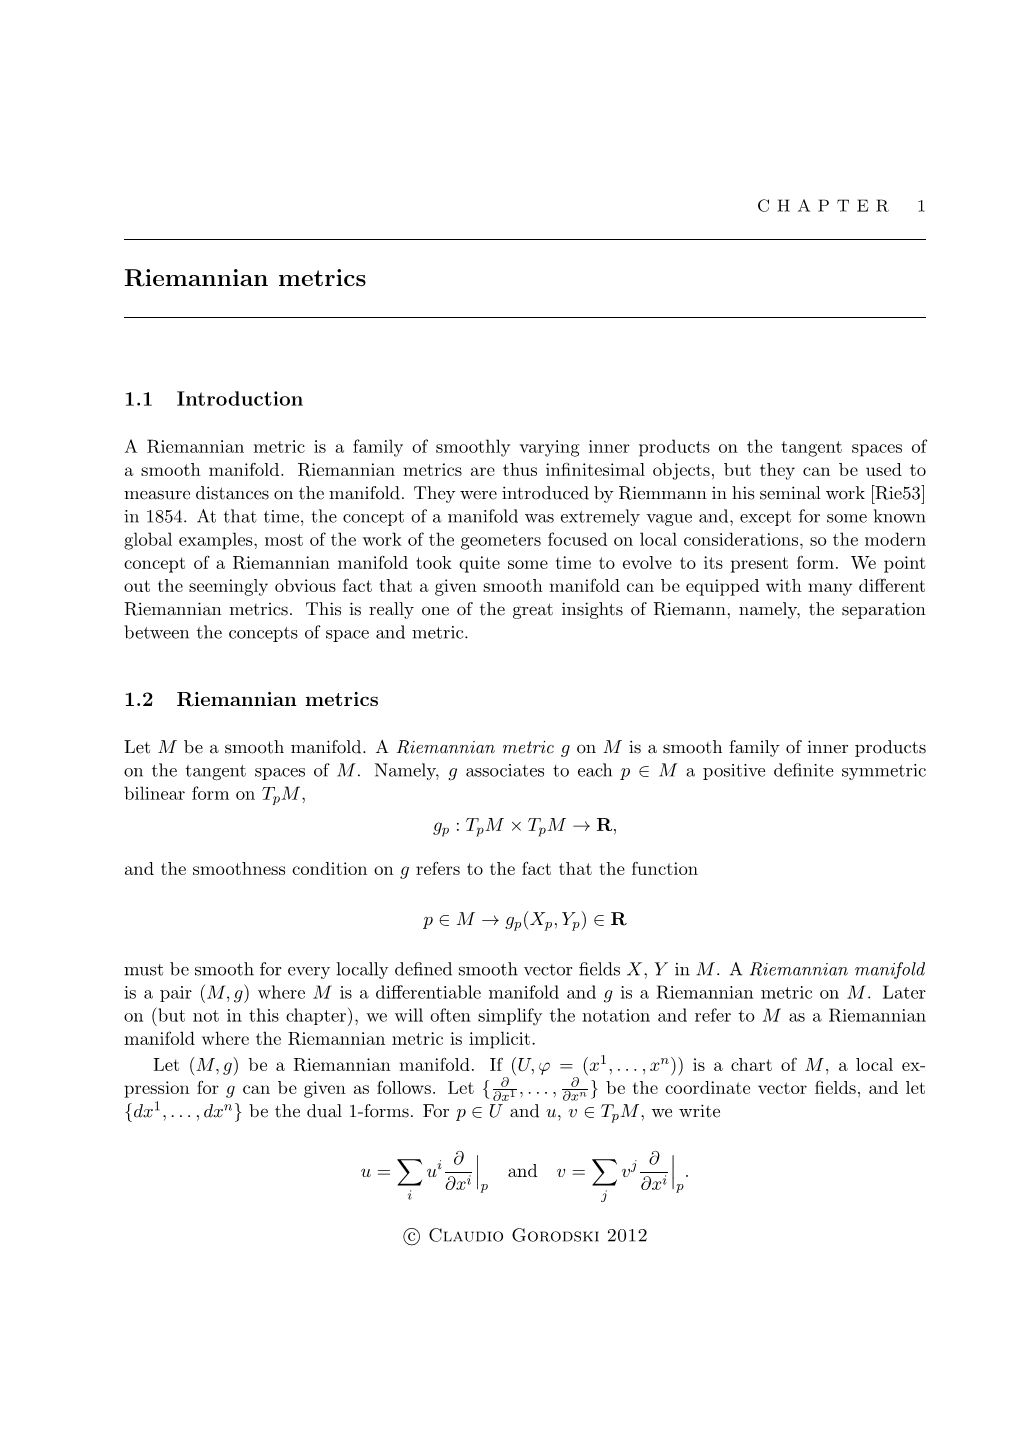 Riemannian Metrics